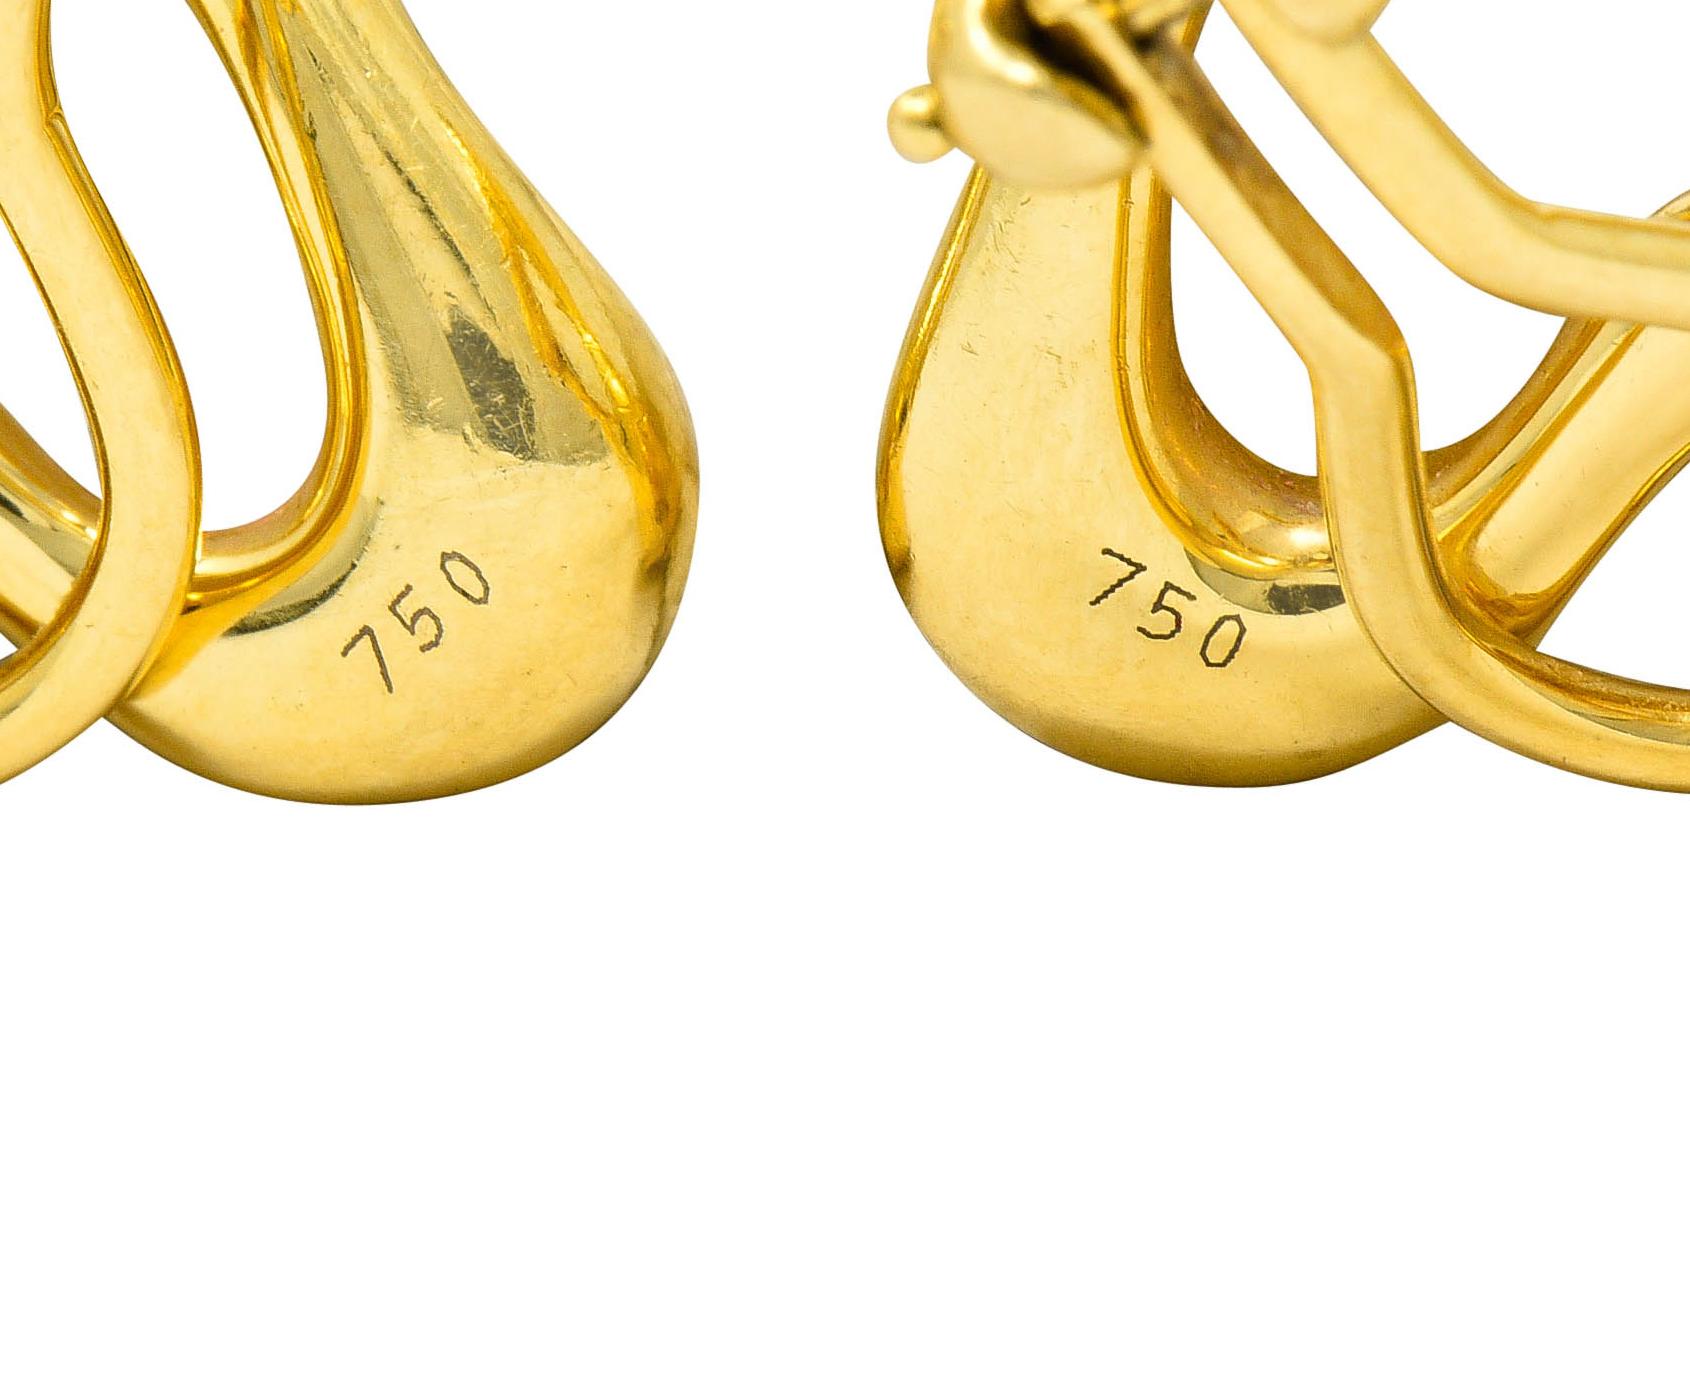 Contemporary Elsa Peretti Tiffany & Co. 18 Karat Gold Open Heart Ear-Clip Earrings